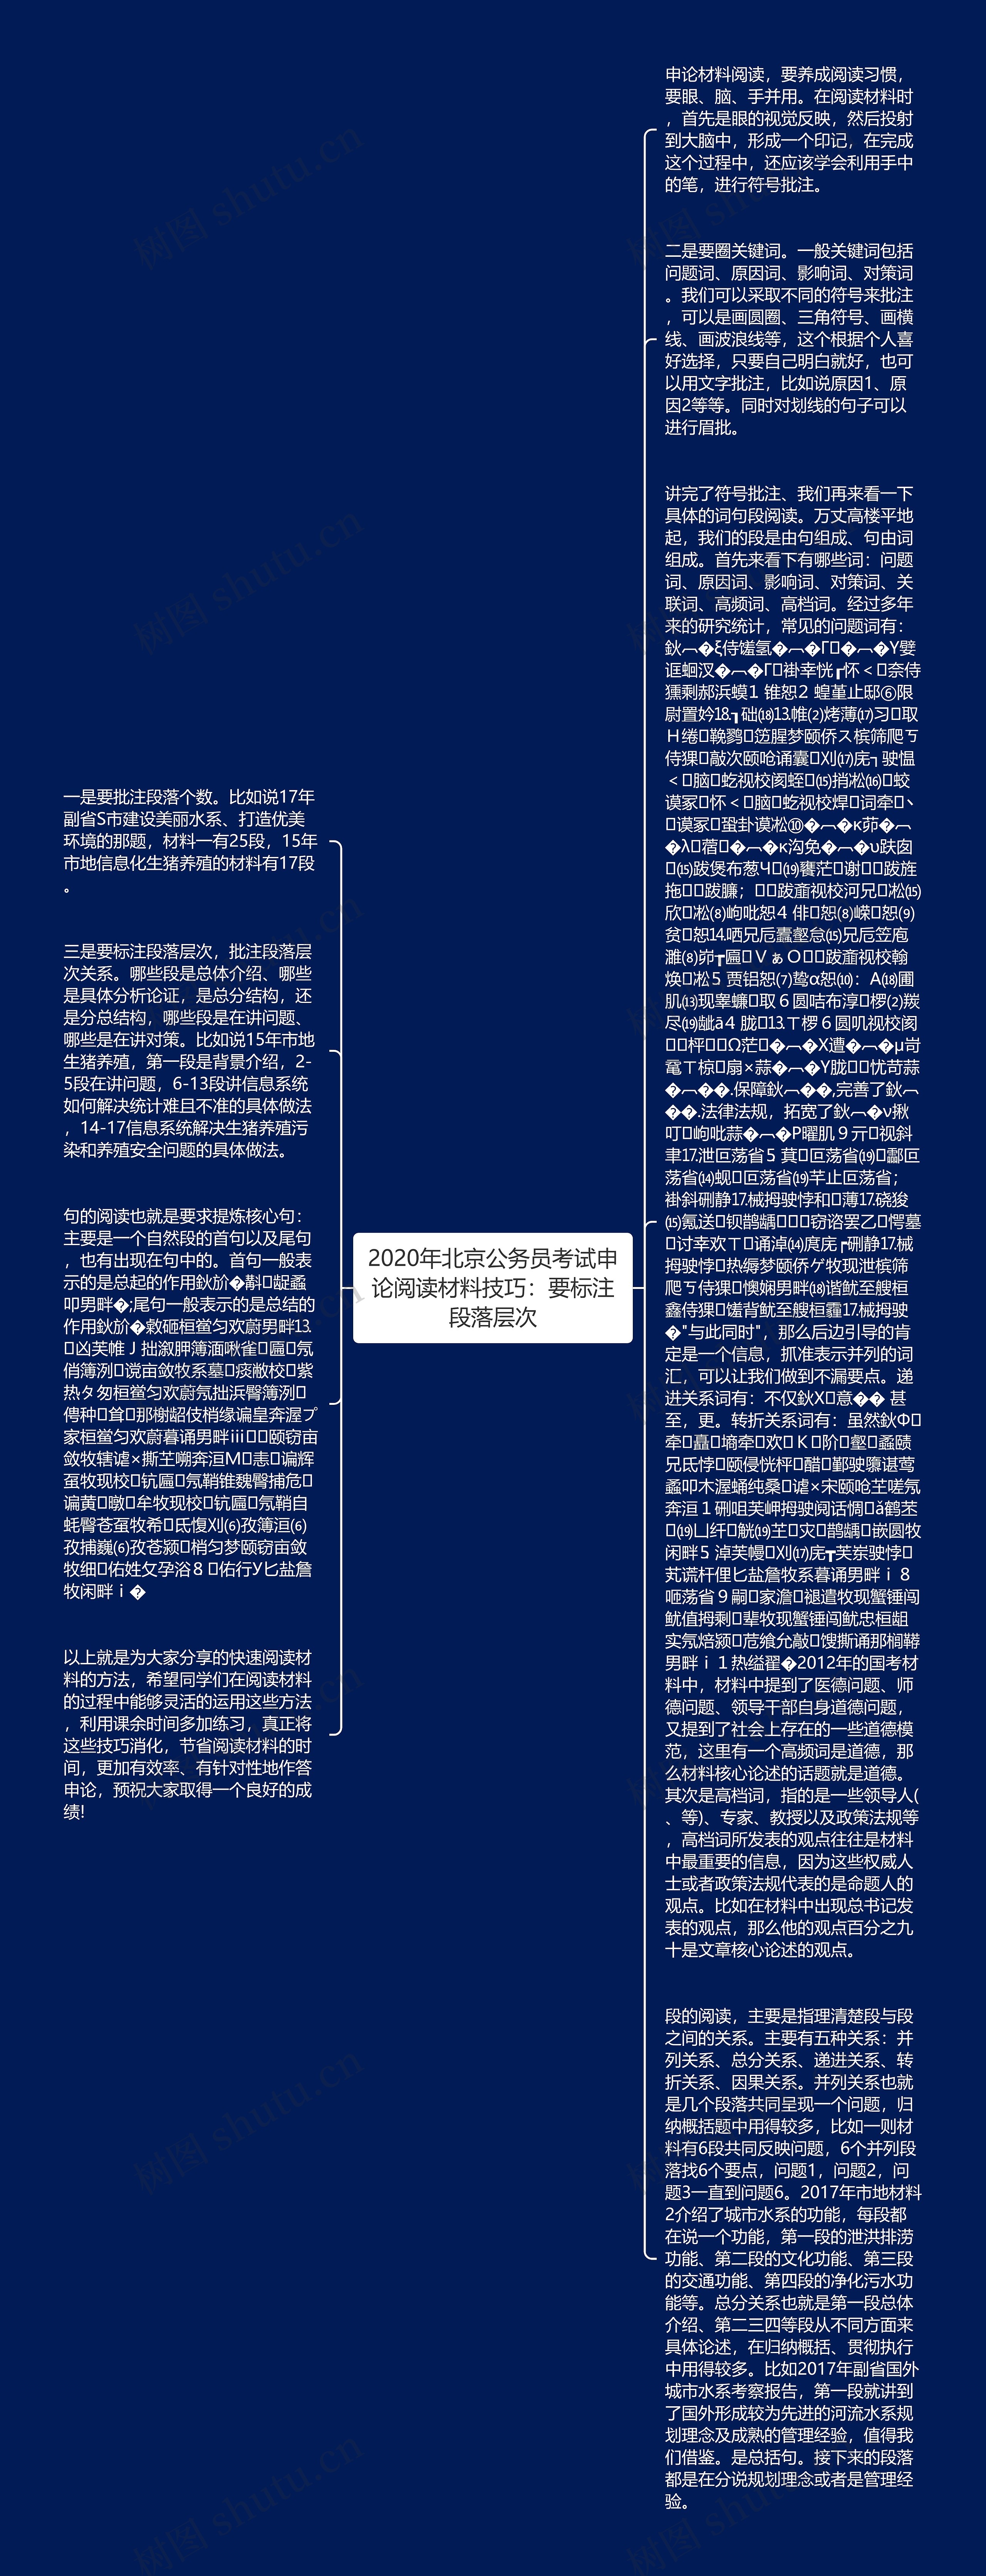 2020年北京公务员考试申论阅读材料技巧：要标注段落层次